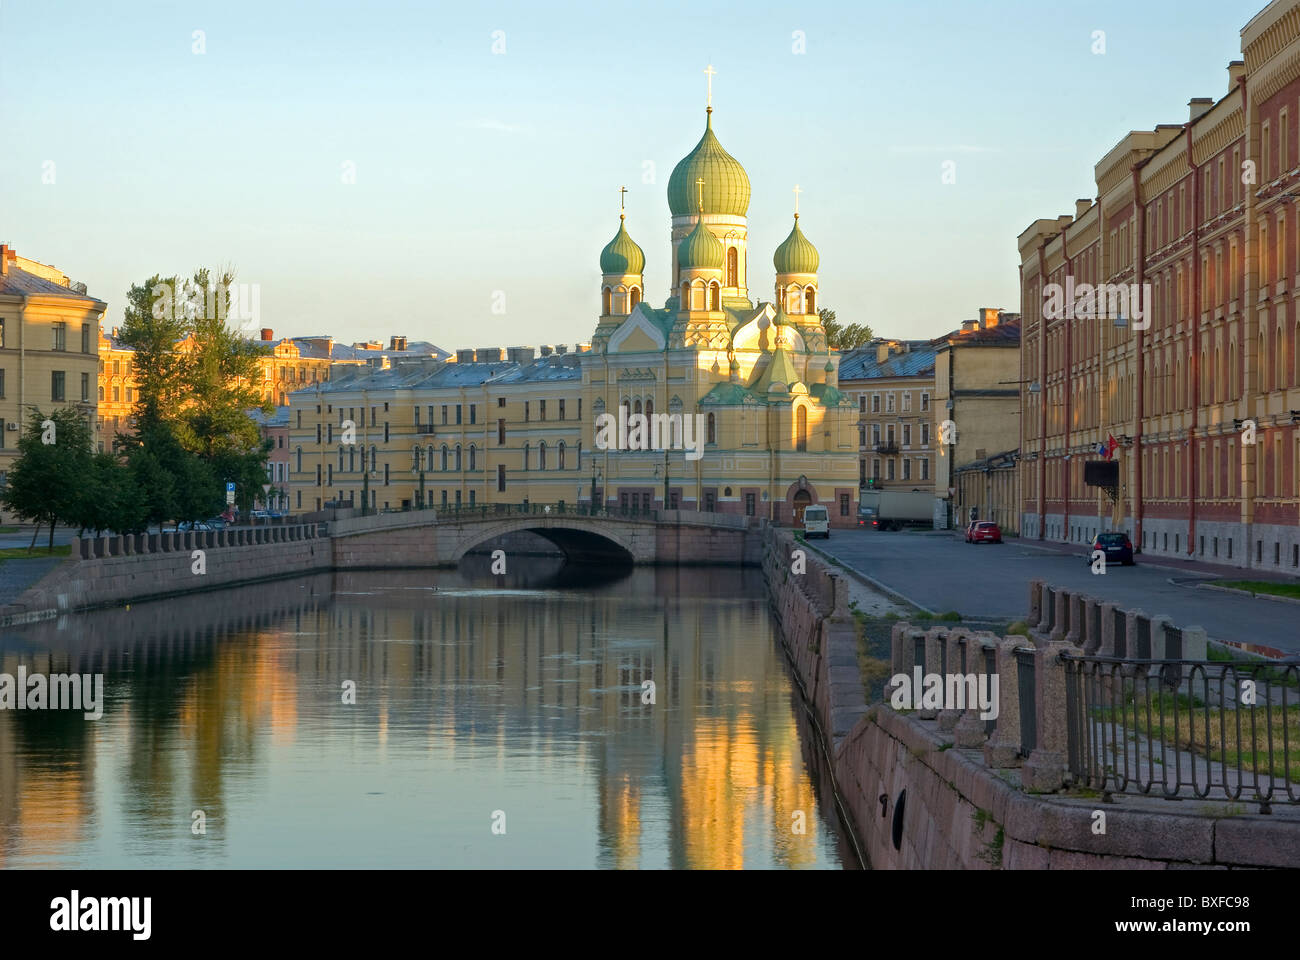 Amanecer en San Petersburgo. La iglesia y el puente sobre el canal Ggiboedov, Petersburg, Rusia Foto de stock